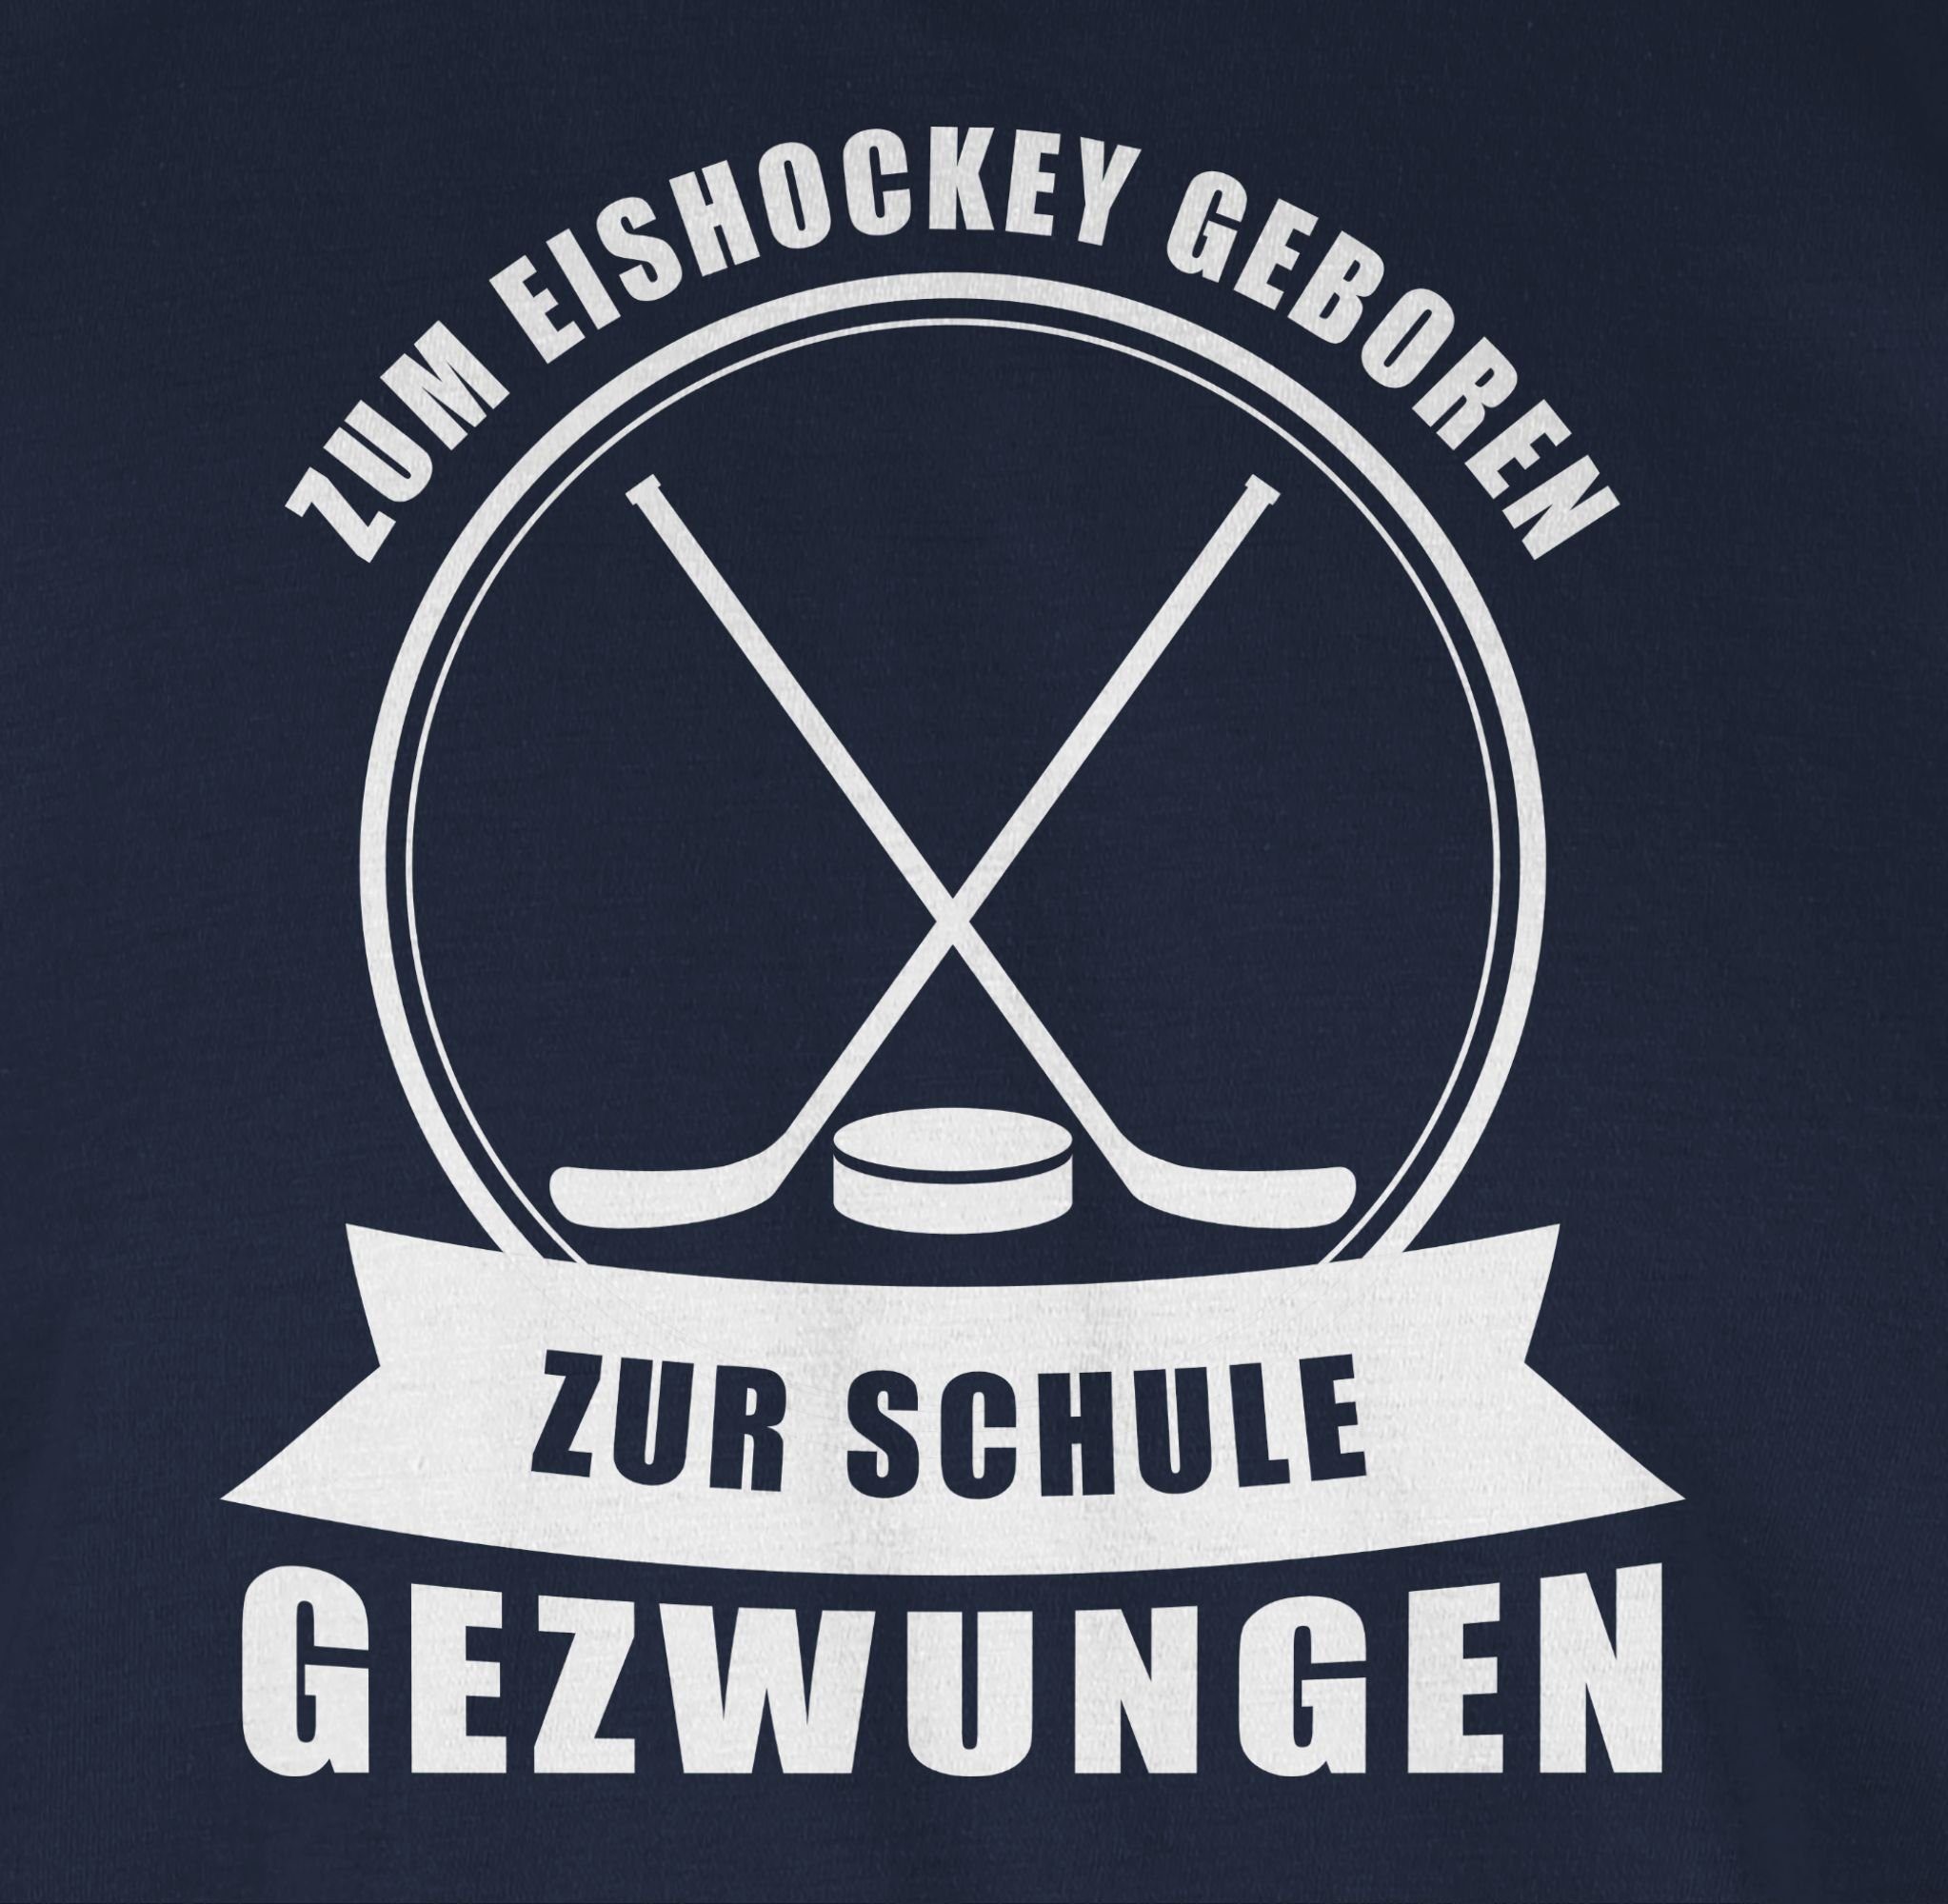 Shirtracer T-Shirt Eishockey geboren. Schule Zum Blau Eishockey Navy 2 Zur gezwungen